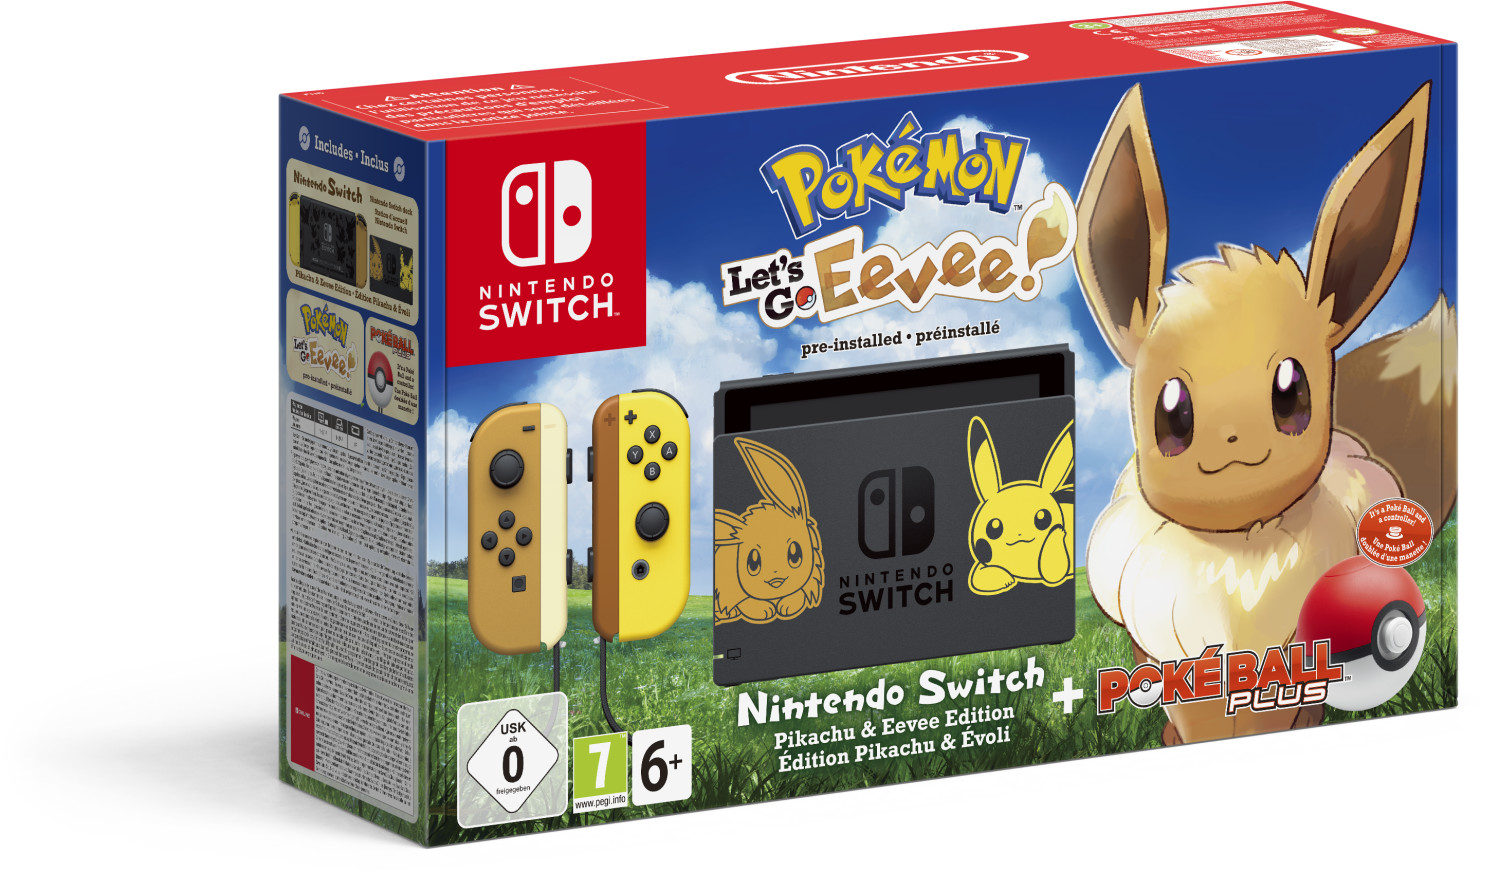 Nintendo Switch Pikachu & Évoli + Pokémon: Let's Go, Evoli + Pokéball Plus